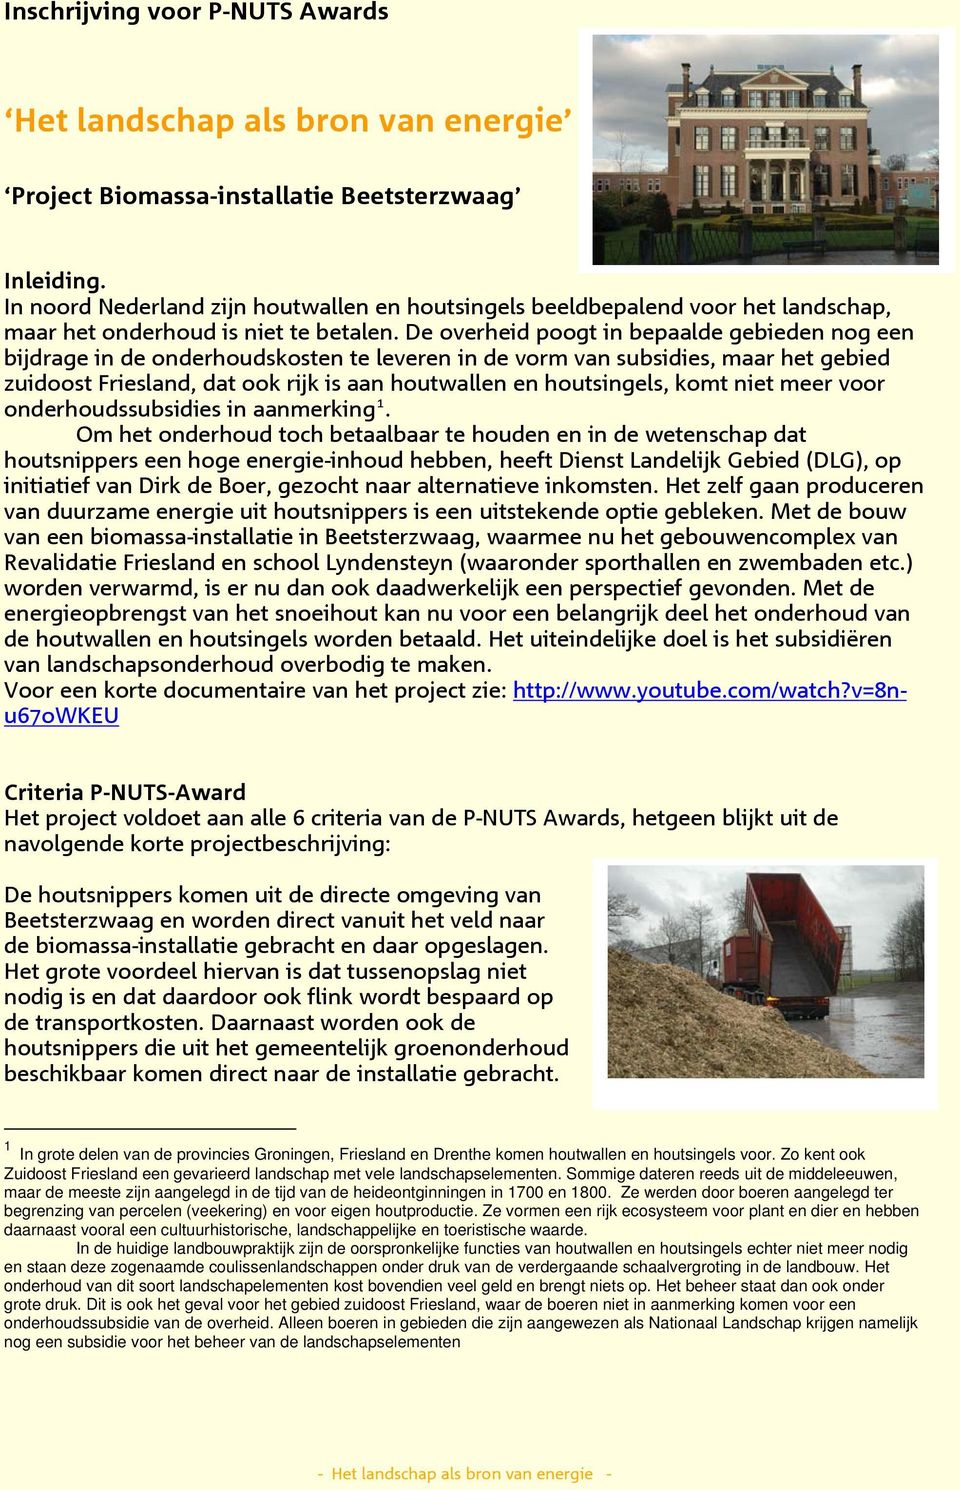 De overheid poogt in bepaalde gebieden nog een bijdrage in de onderhoudskosten te leveren in de vorm van s, maar het gebied zuidoost Friesland, dat ook rijk is aan houtwallen en houtsingels, komt